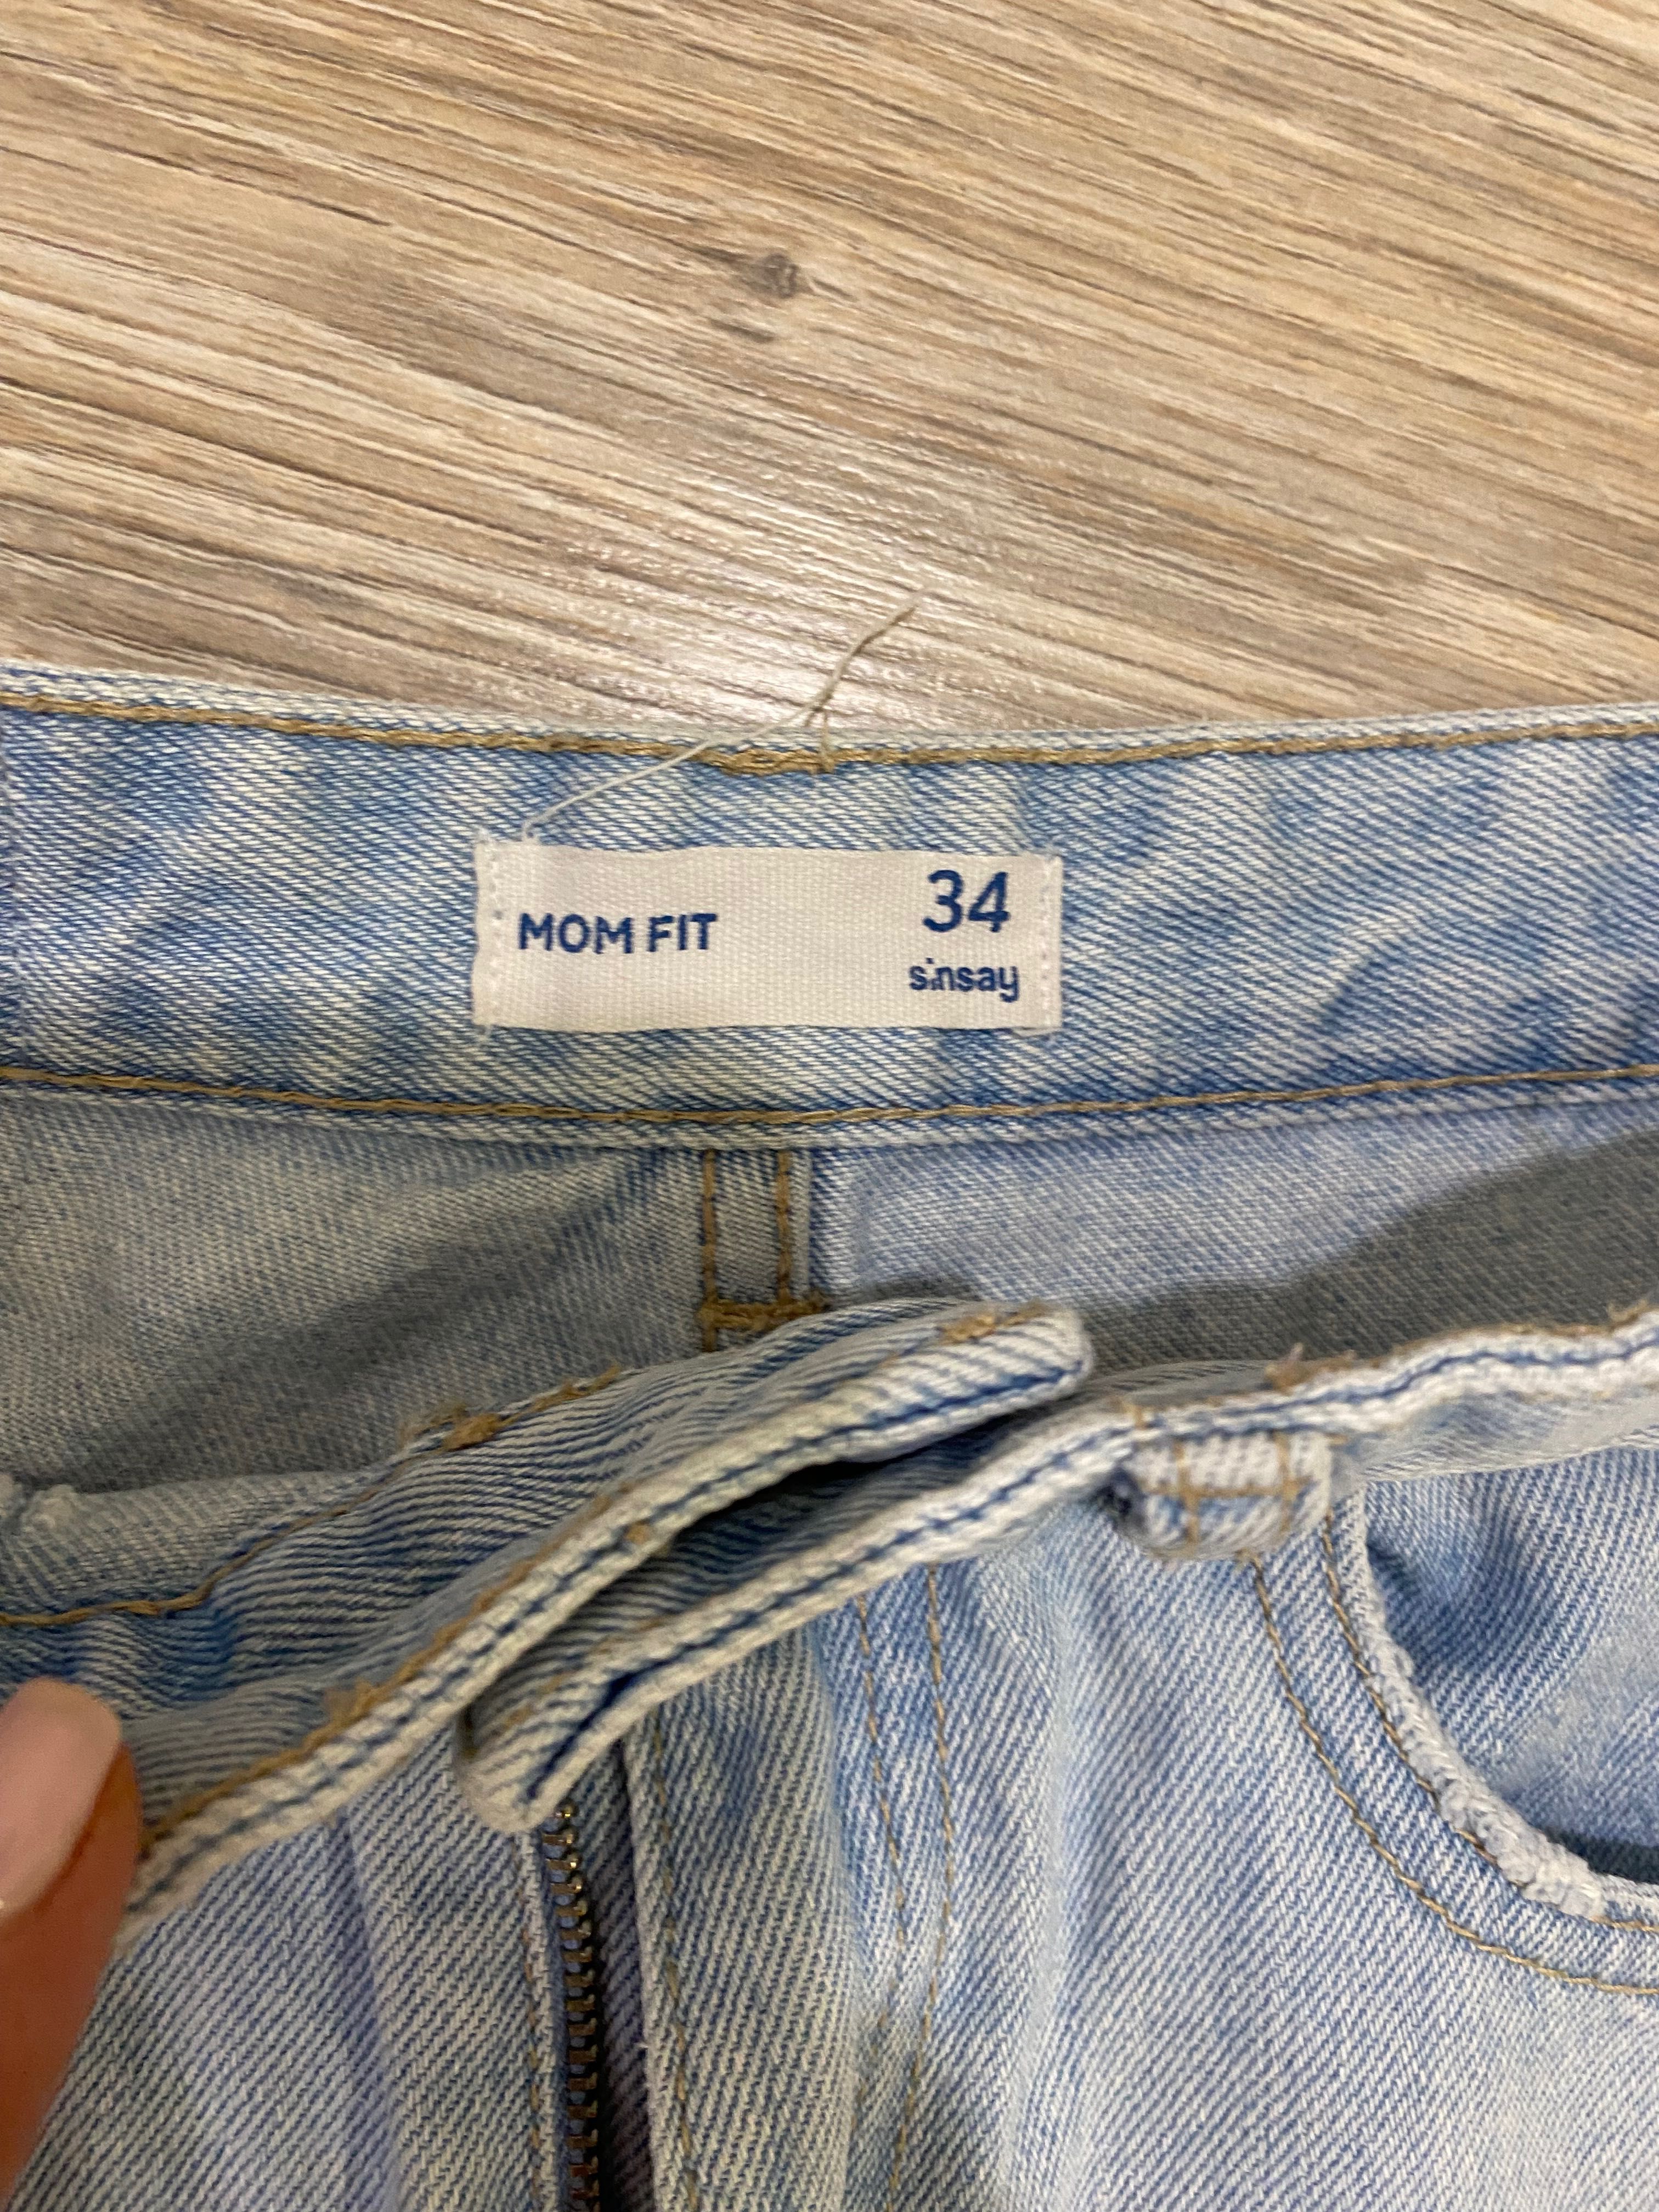 Продам блакитні джинси на дівчинку 34 розміру за 175 грн